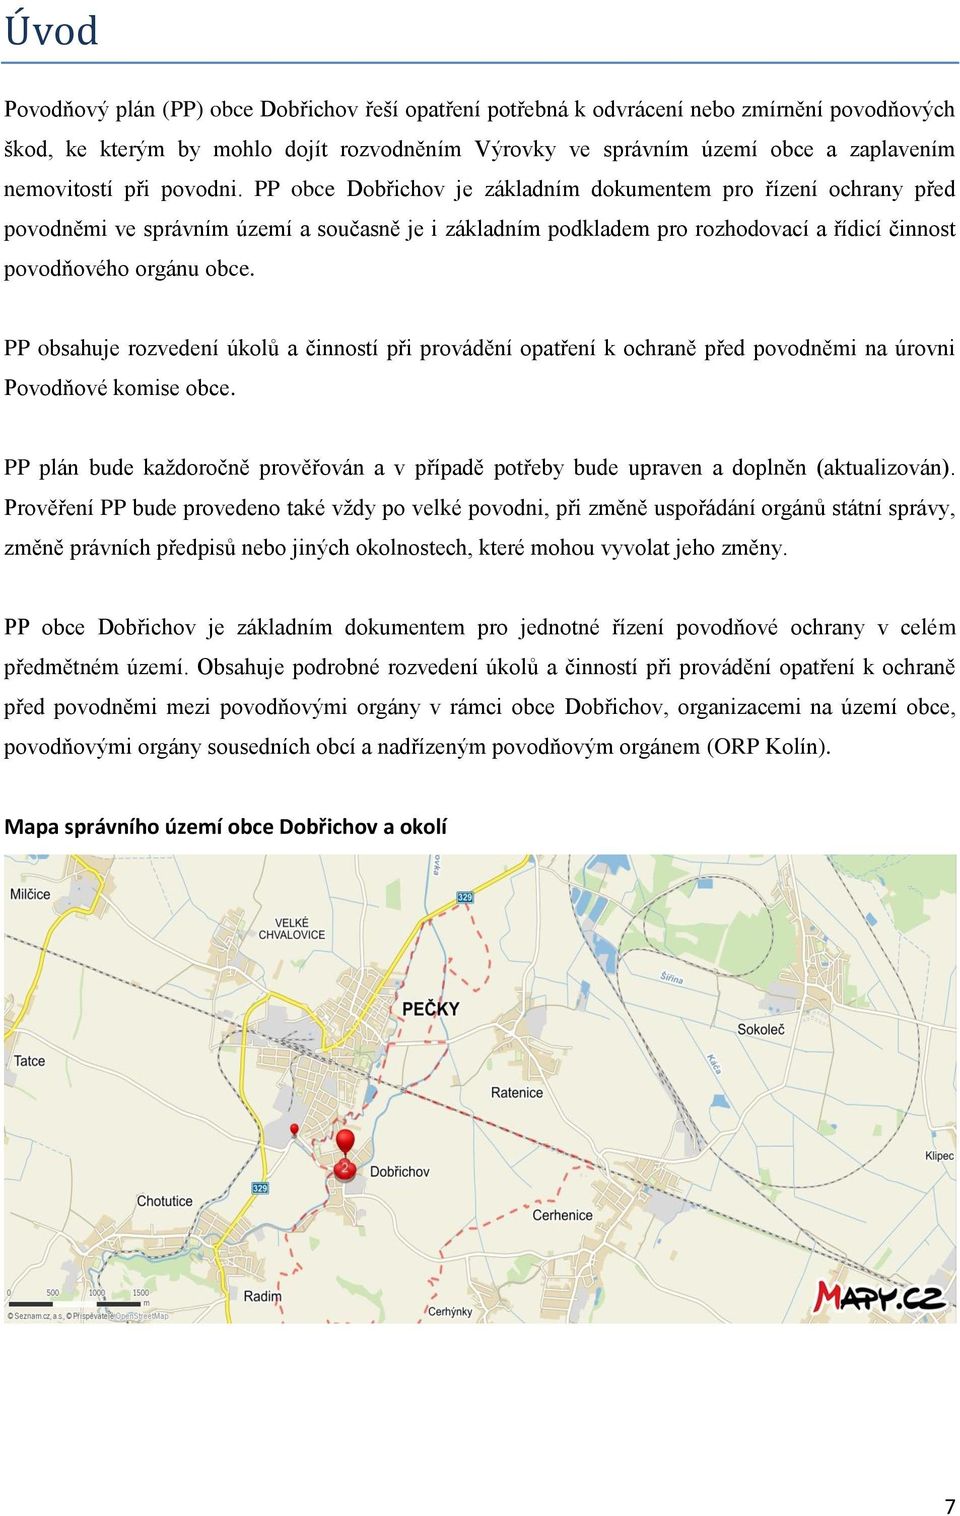 PP obce Dobřichov je základním dokumentem pro řízení ochrany před povodněmi ve správním území a současně je i základním podkladem pro rozhodovací a řídicí činnost povodňového orgánu obce.